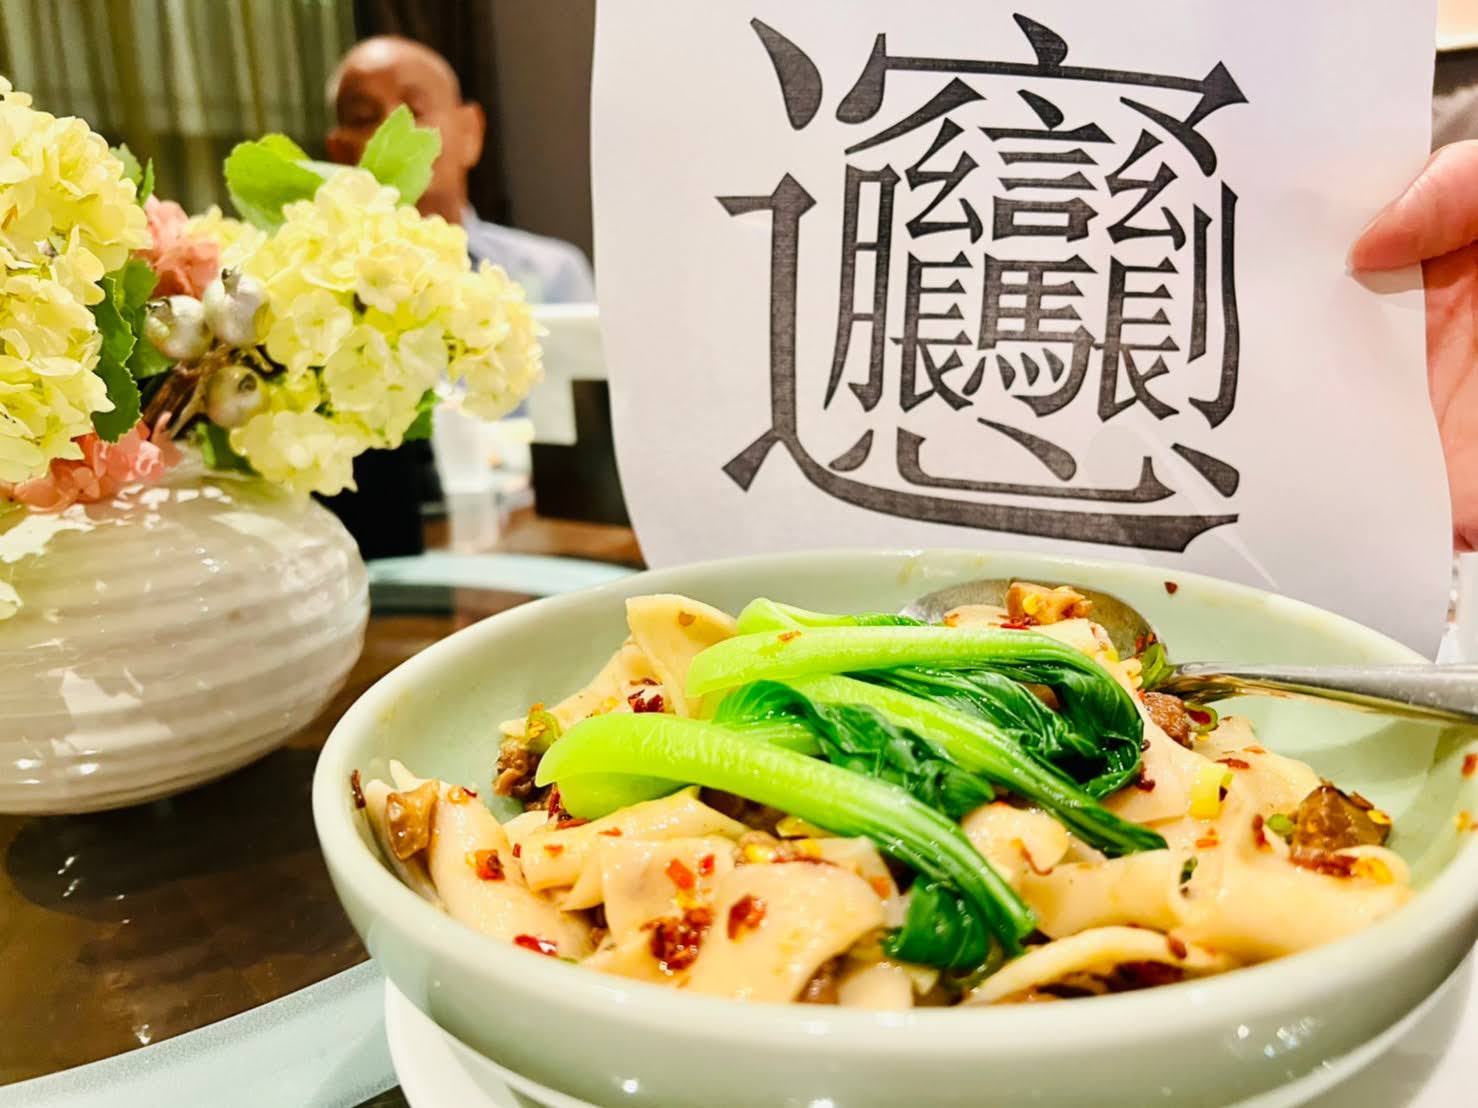 陝西biangbiang面 台北美食推薦 請客樓 米其林二星餐廳 菜單 訂位 尾牙